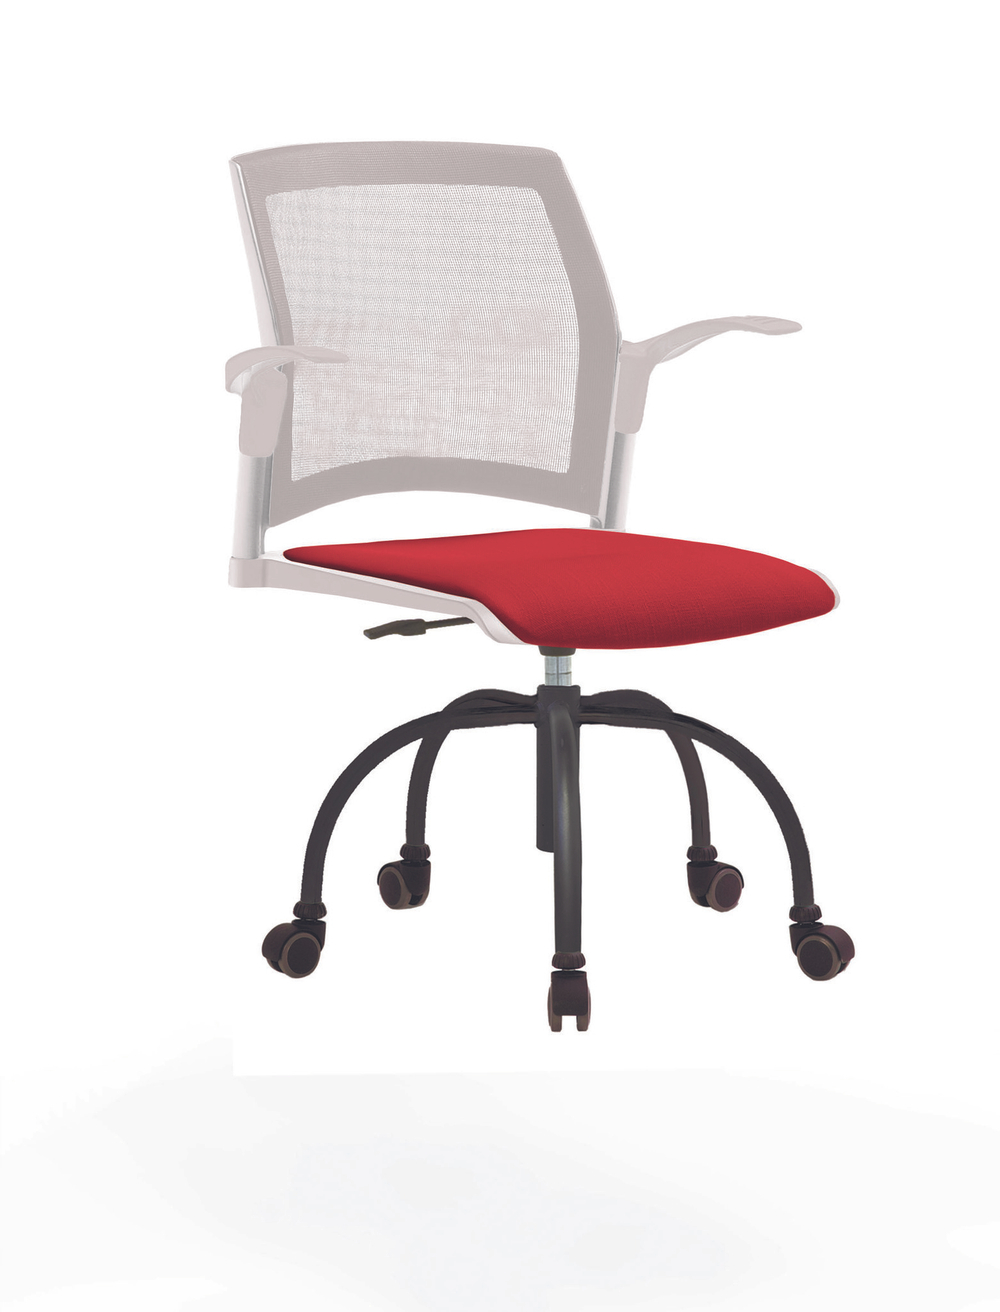 Кресло Rewind каркас черный, пластик белый, база паук краска черная, с открытыми подлокотниками, сидение красное, спинка-сетка